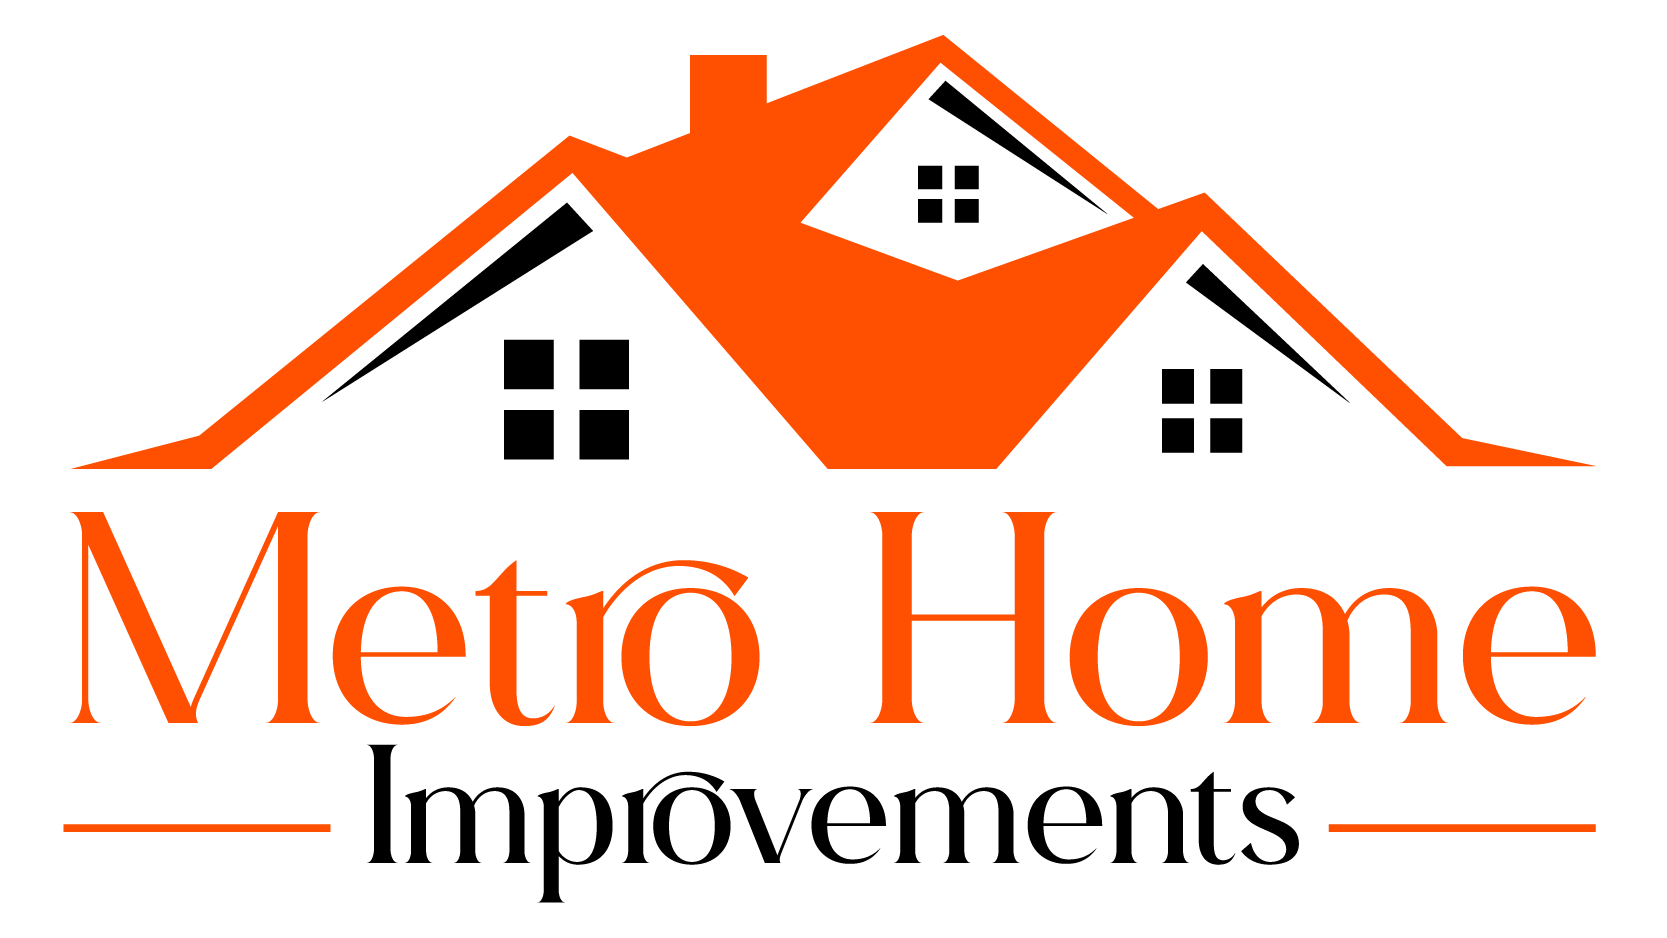 Metro Home Improvements